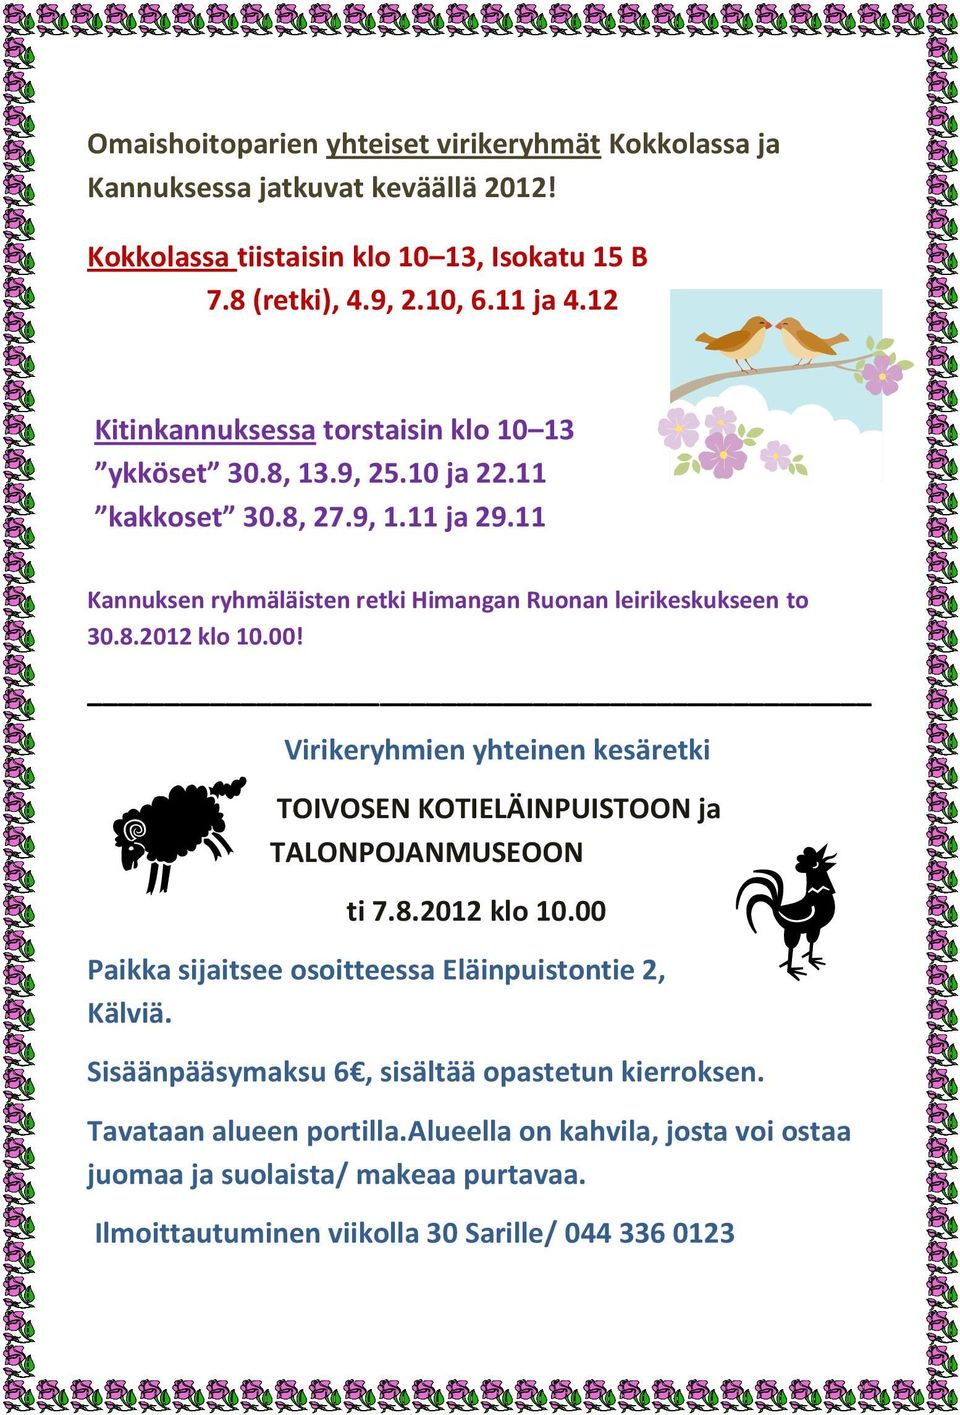 00! Virikeryhmien yhteinen kesäretki TOIVOSEN KOTIELÄINPUISTOON ja TALONPOJANMUSEOON ti 7.8.2012 klo 10.00 Paikka sijaitsee osoitteessa Eläinpuistontie 2, Kälviä.